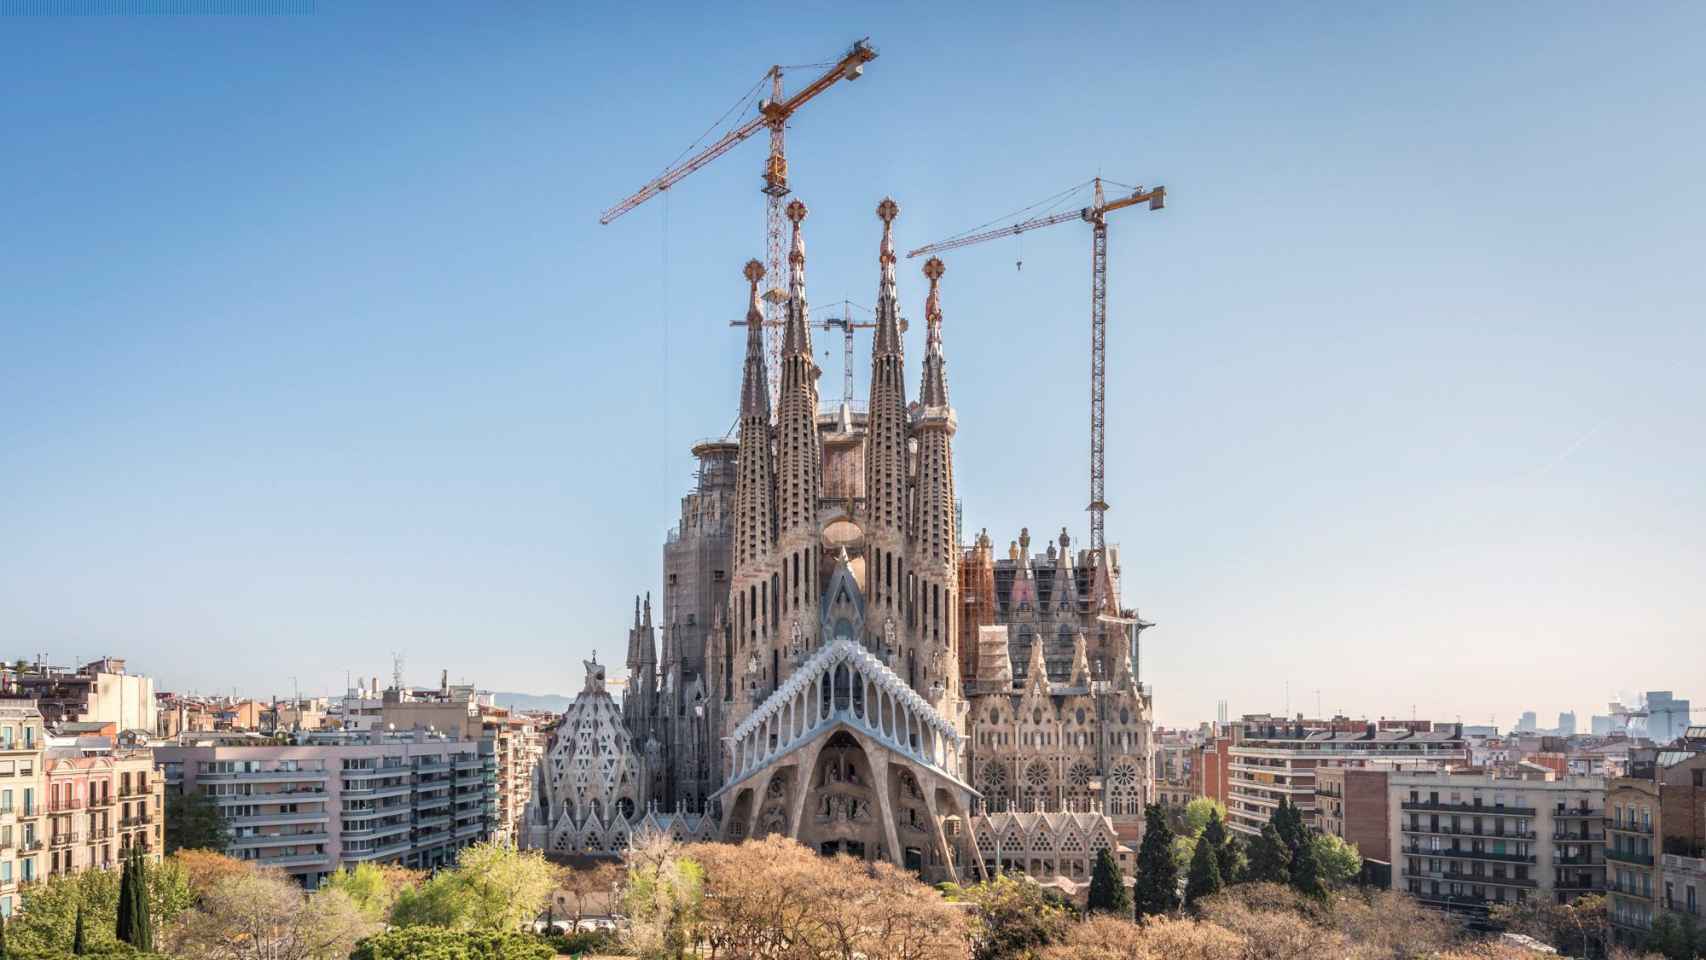 La Sagrada Familia es una basílica católica de Barcelona, diseñada por el arquitecto Antoni Gaudí